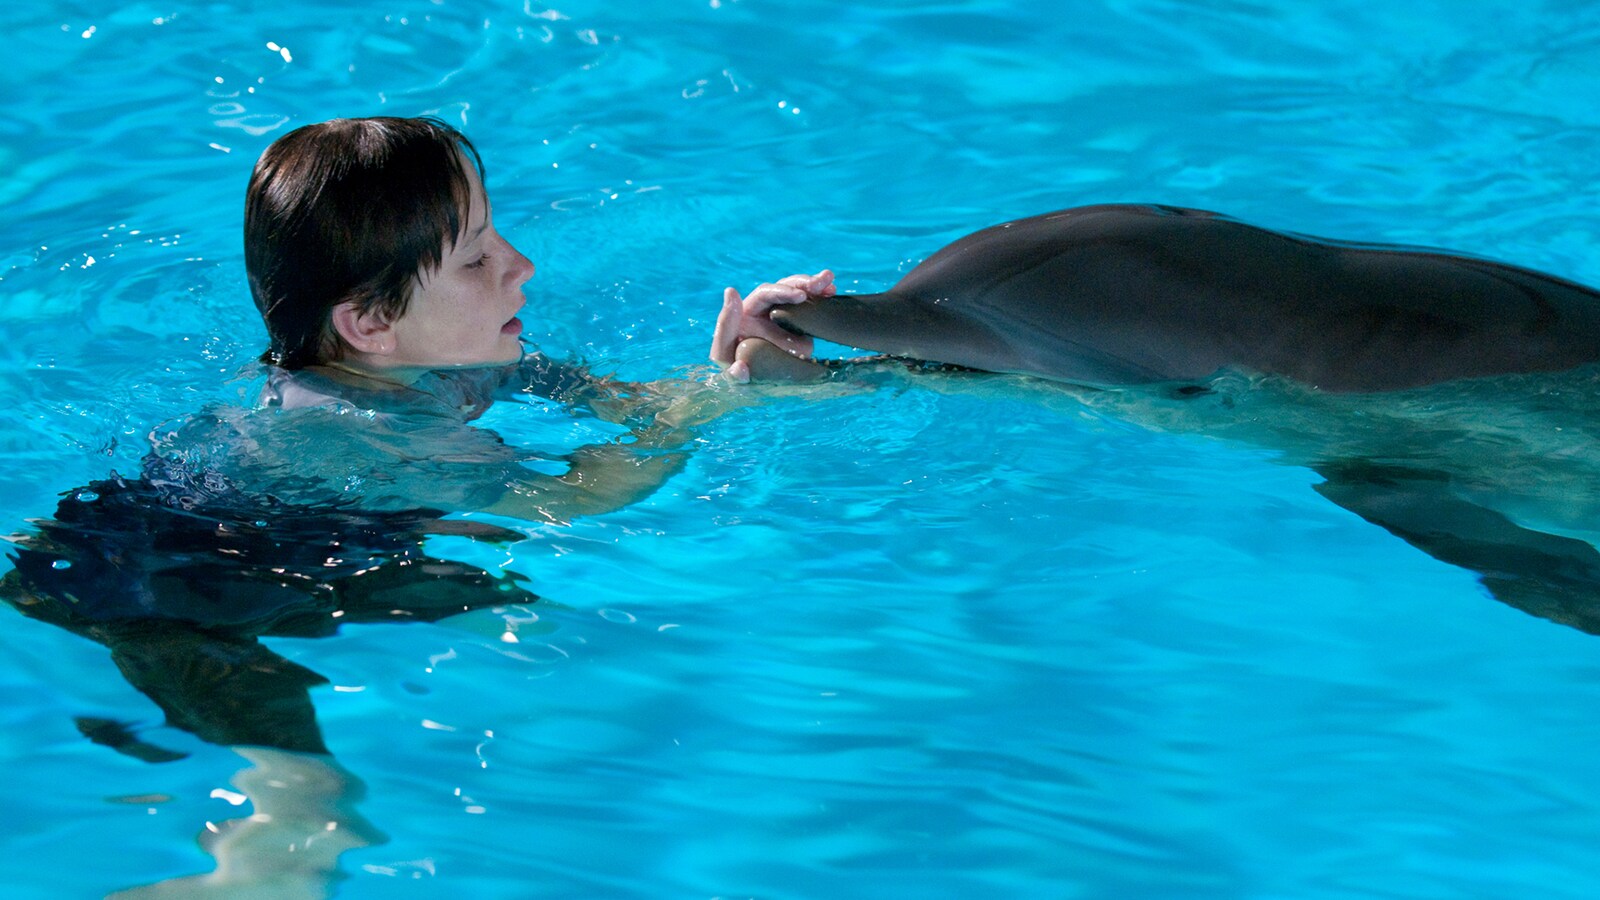 gutten-og-delfinen-2011